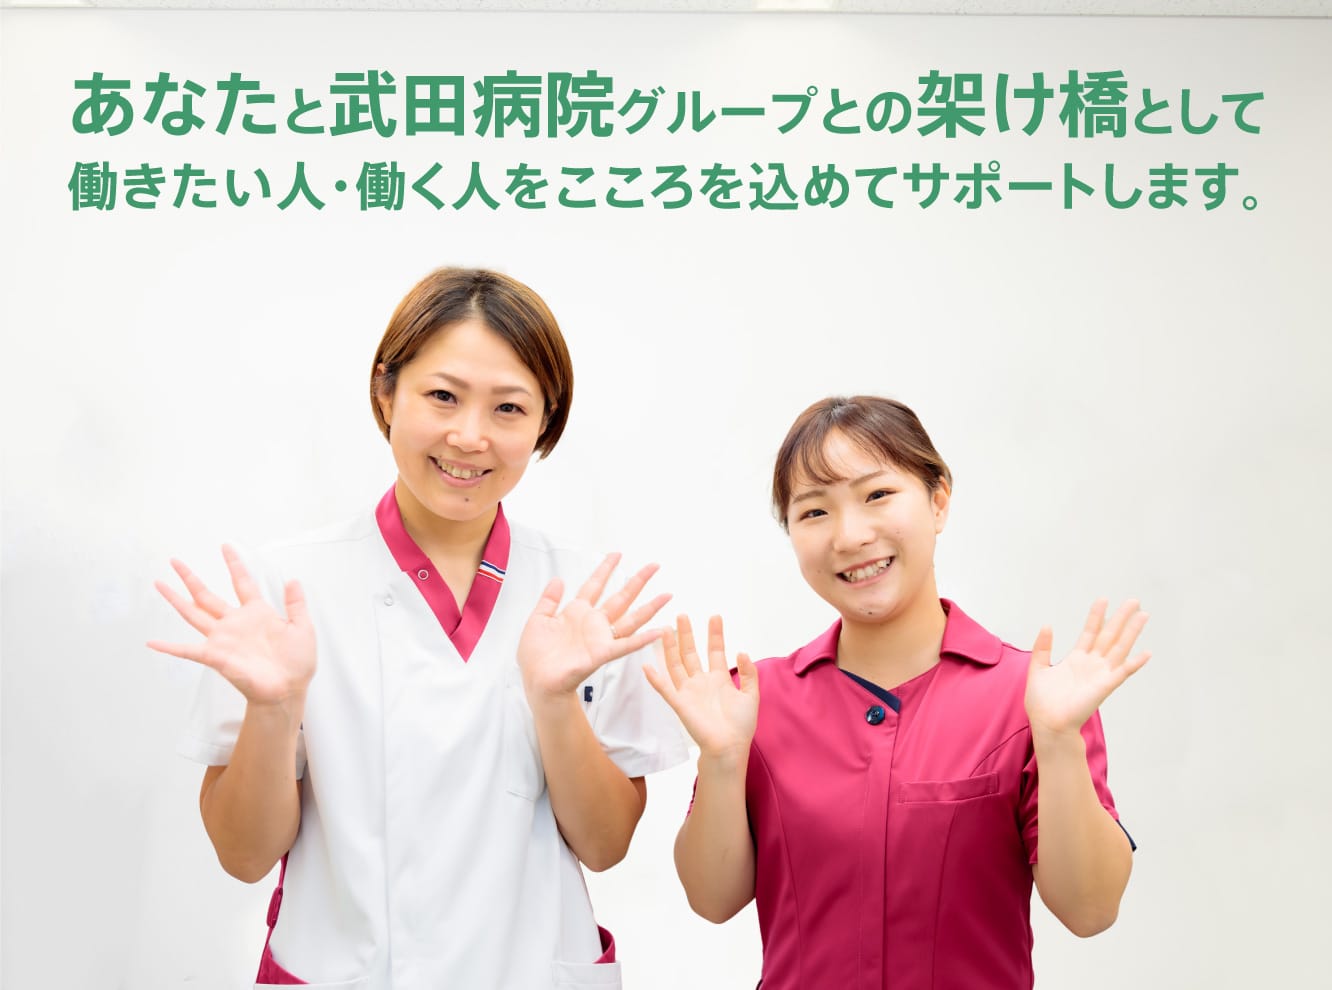 あなたと武田病院グループとの架け橋として
                                  働きたい人・働く人をこころを込めてサポートします。